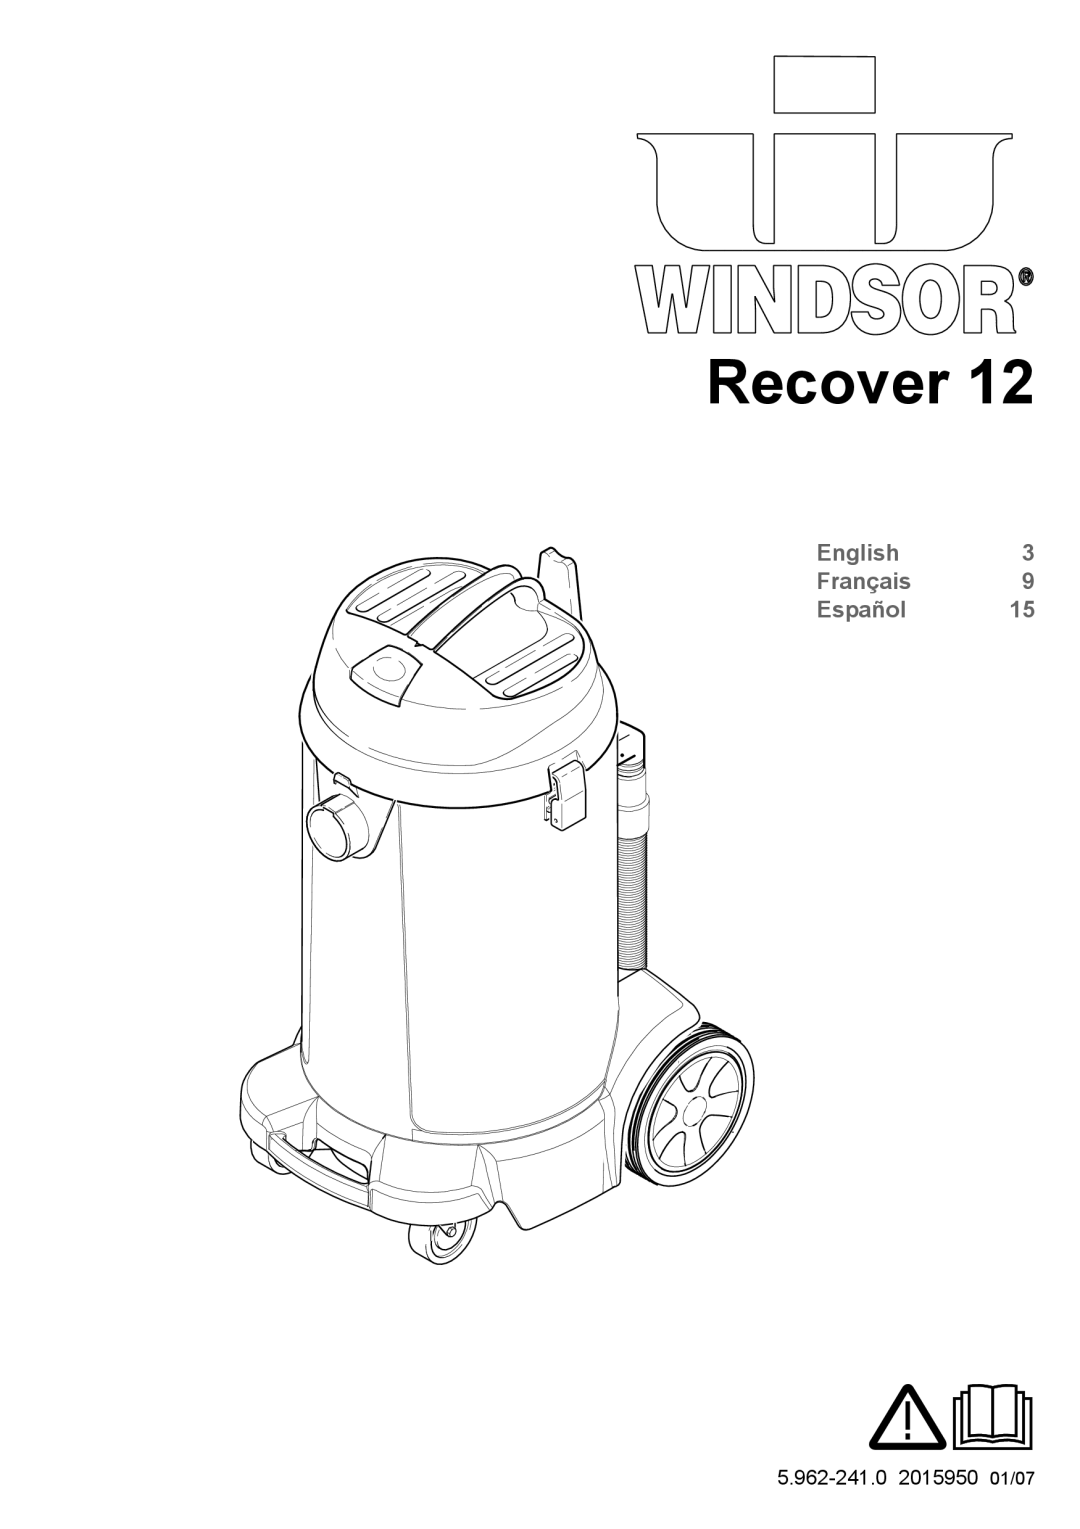 Windsor 12 manual Recover, English Français Español 